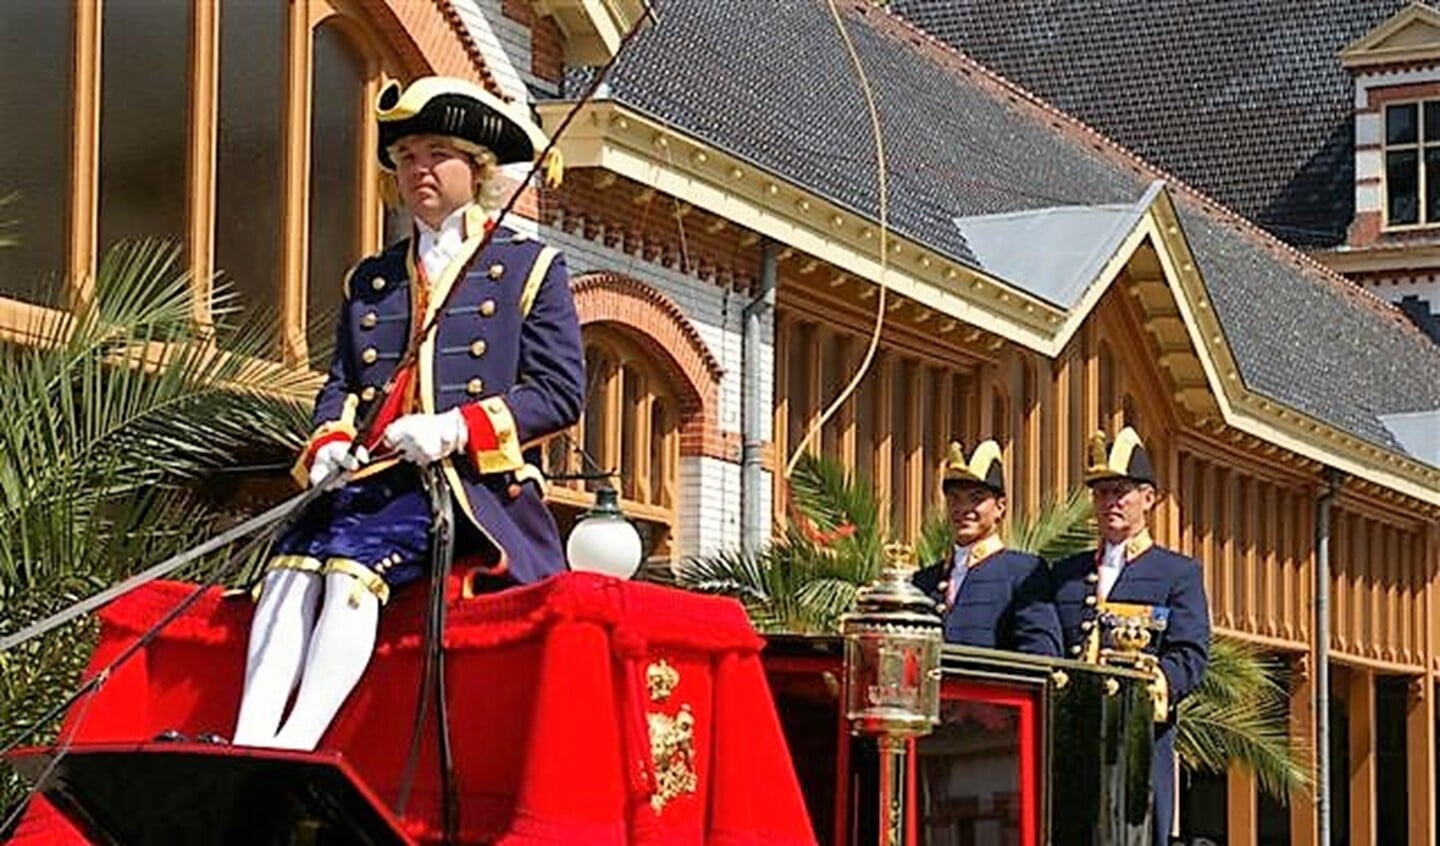 Bryan op de koets bij de Koninklijke Stallen in Apeldoorn.